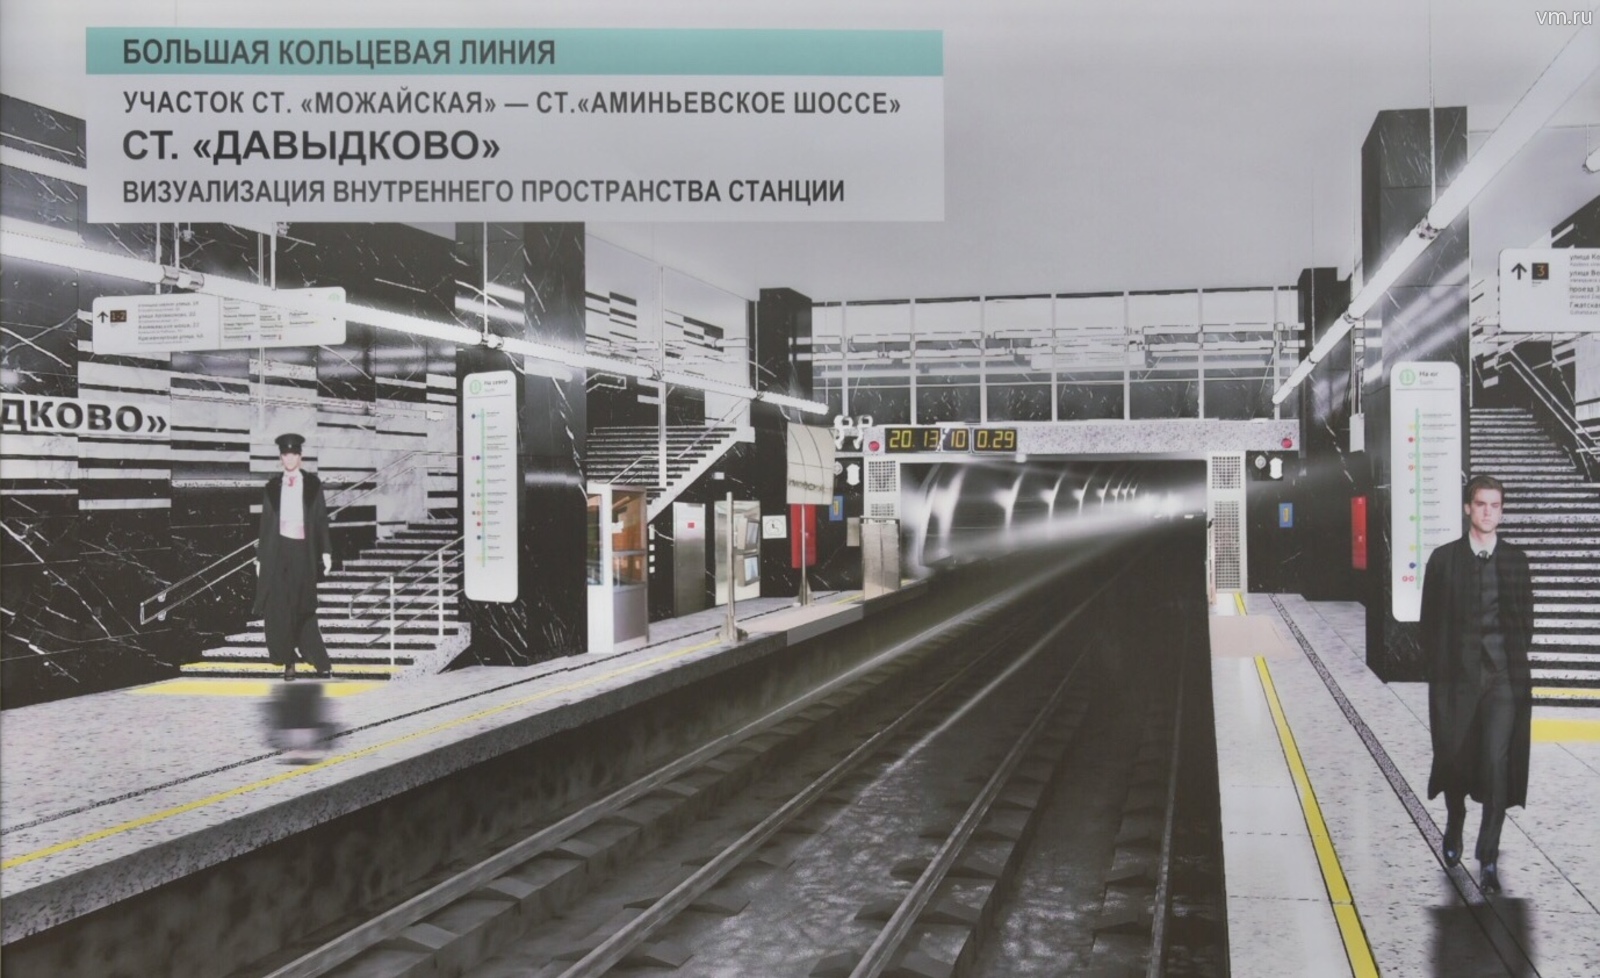 давыдково станция метро